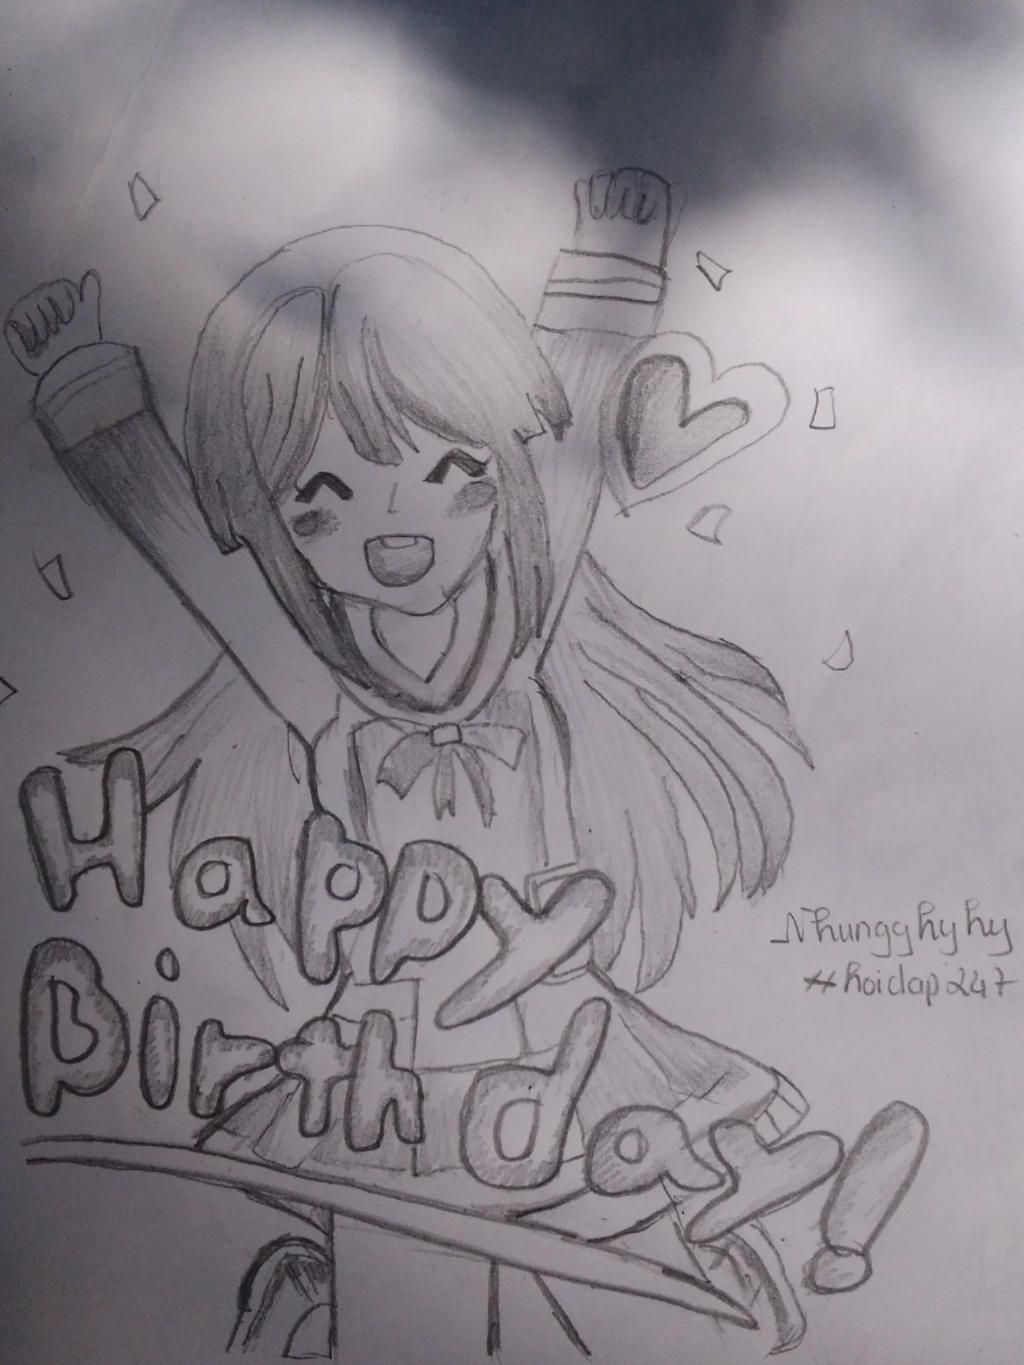 Vẽ anime chúc mừng sinh nhật Full line Full màu Vẽ bằng bút chì Có tâm 1  pic ký 1 pic ko ký và Viết cali chữ happy birthday - câu hỏi 2054161